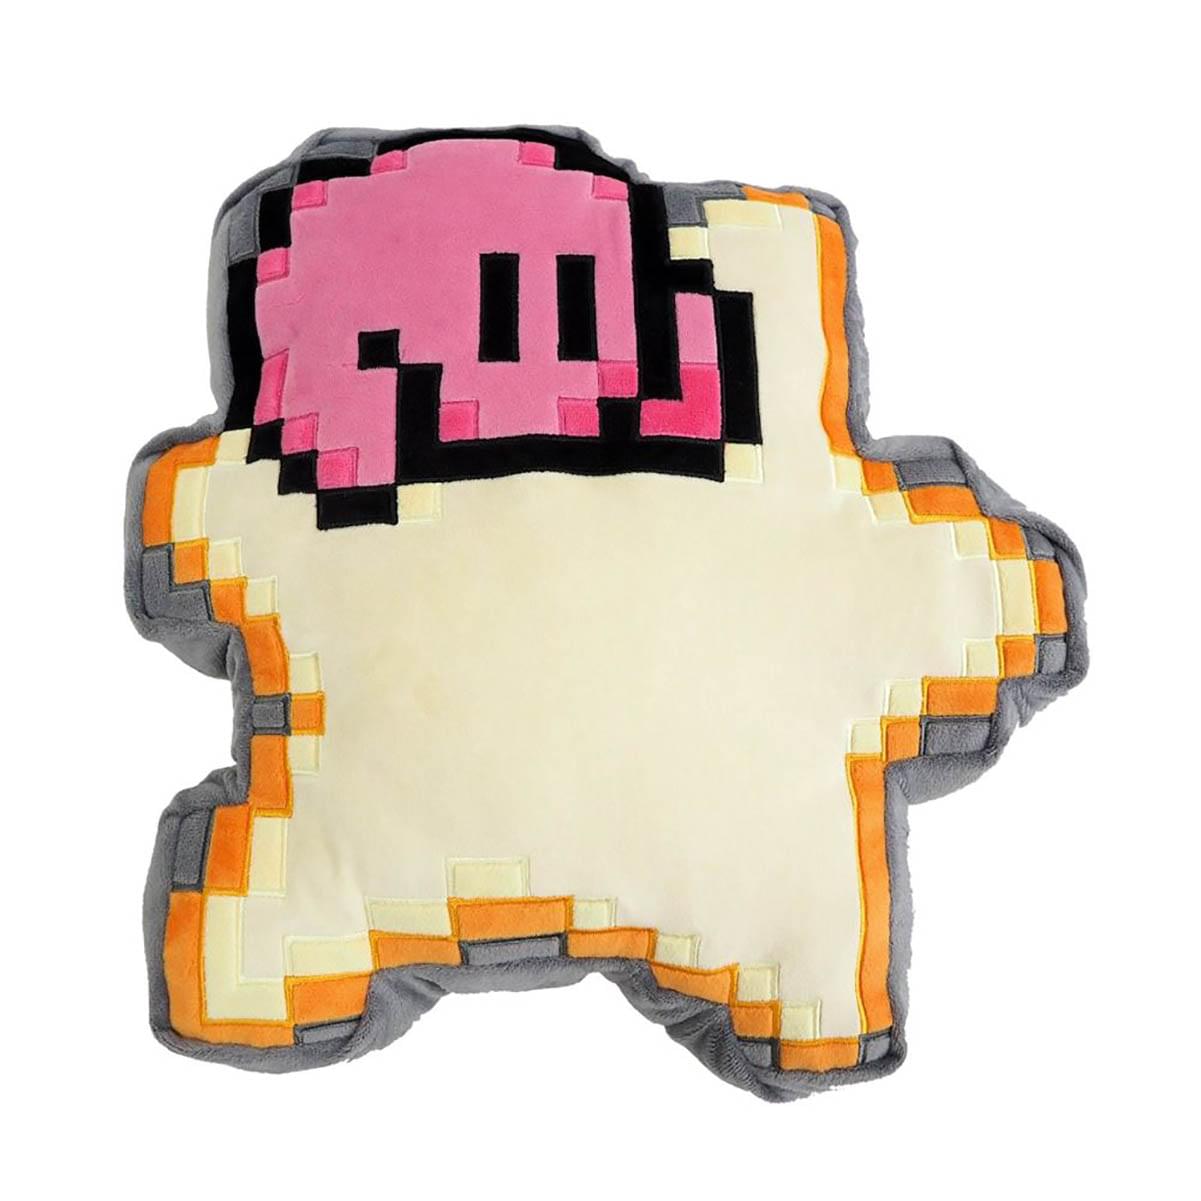 Kirby Nintendo 14 Inch Pillow Plush - 8 Bit Star w/ Kirby